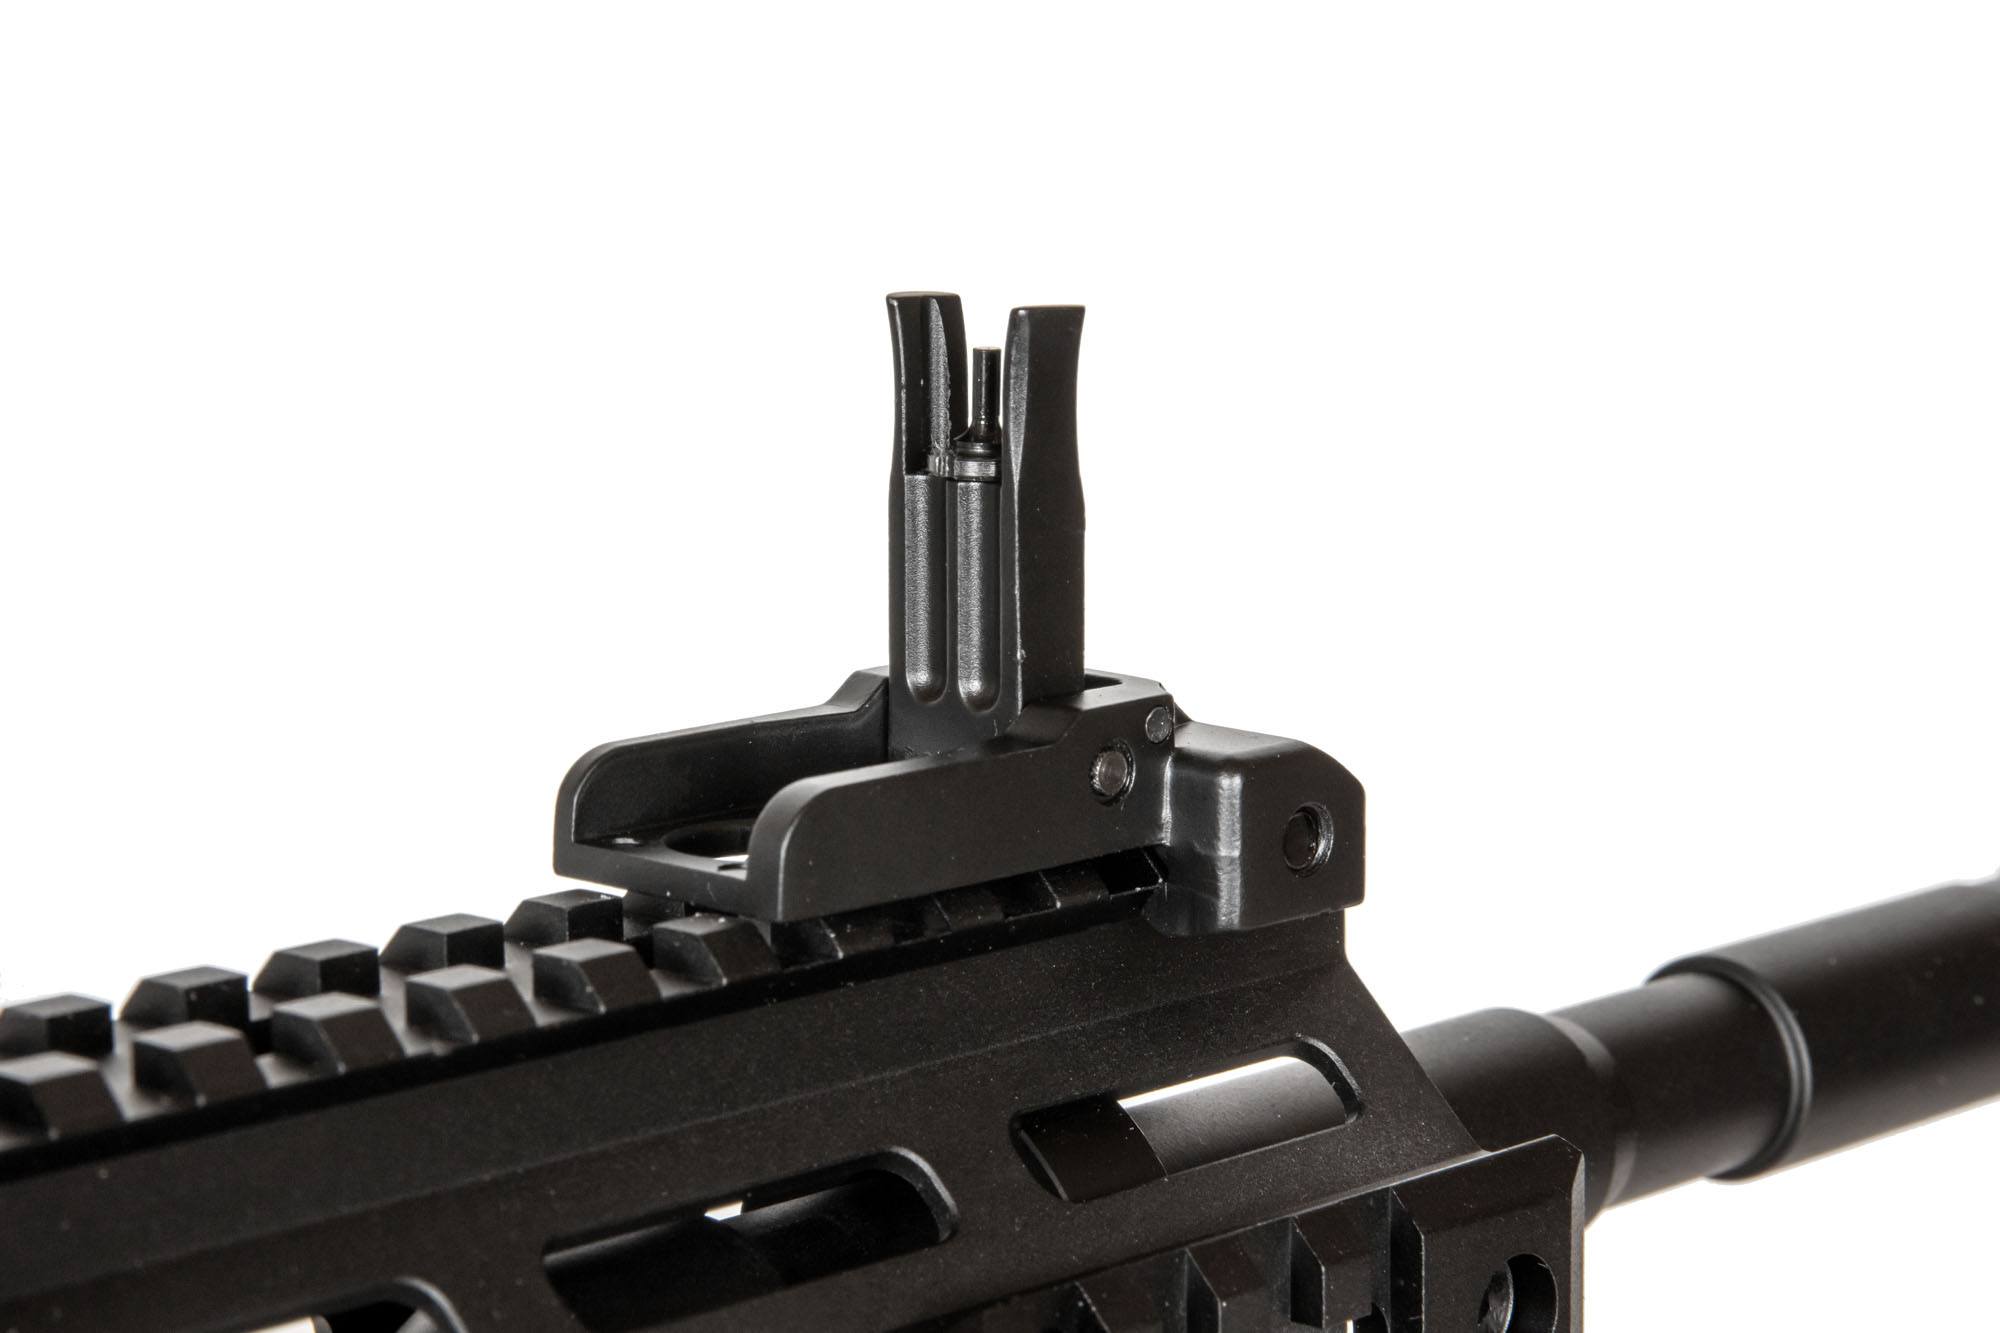 M4 Carbine Replica (056)